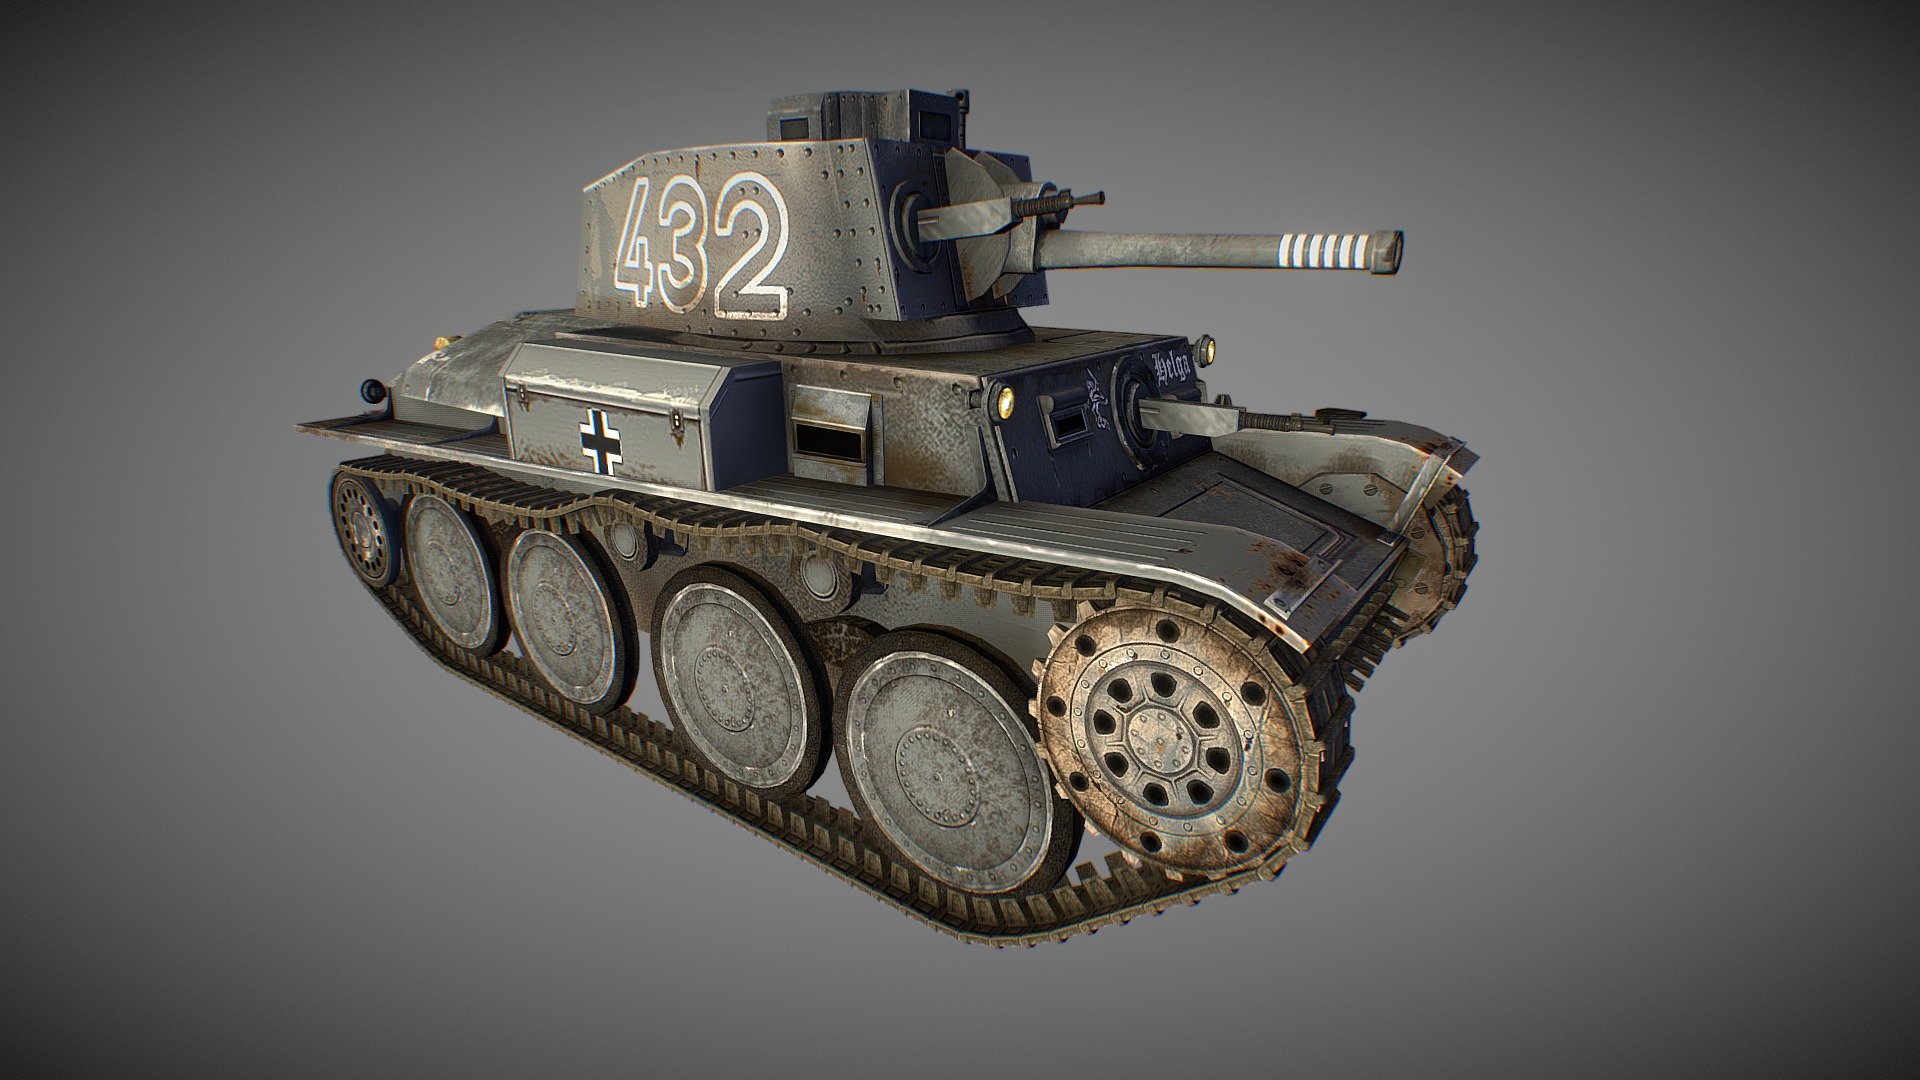 A recreation of a Panzer Tank - PanzerTank3 - 3D model by Philip Gilbert (@PhilipAGilbert) 3d model